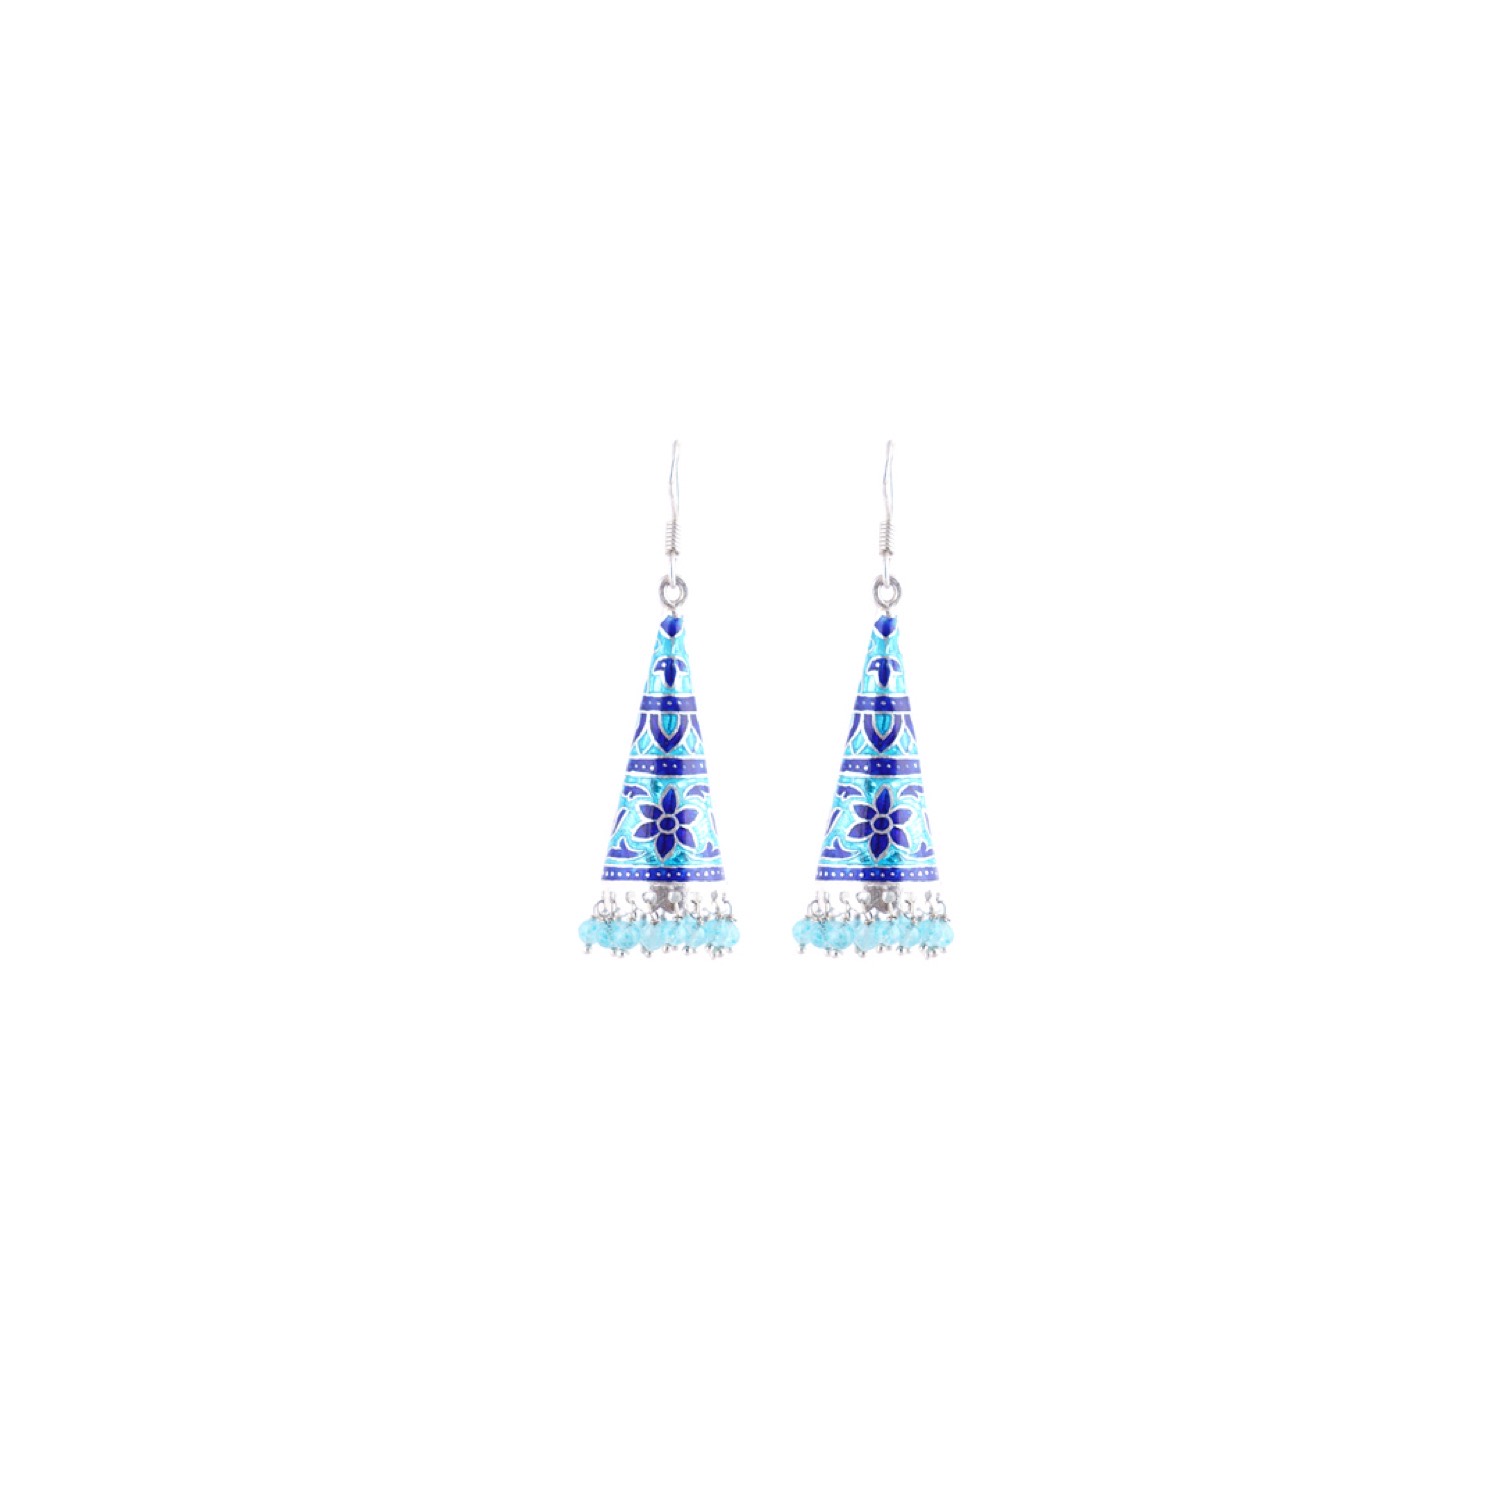 varam_earrings_102022_sky_blue_and_royal_blue_cone_shaped_jumkha_silver_earrings-1